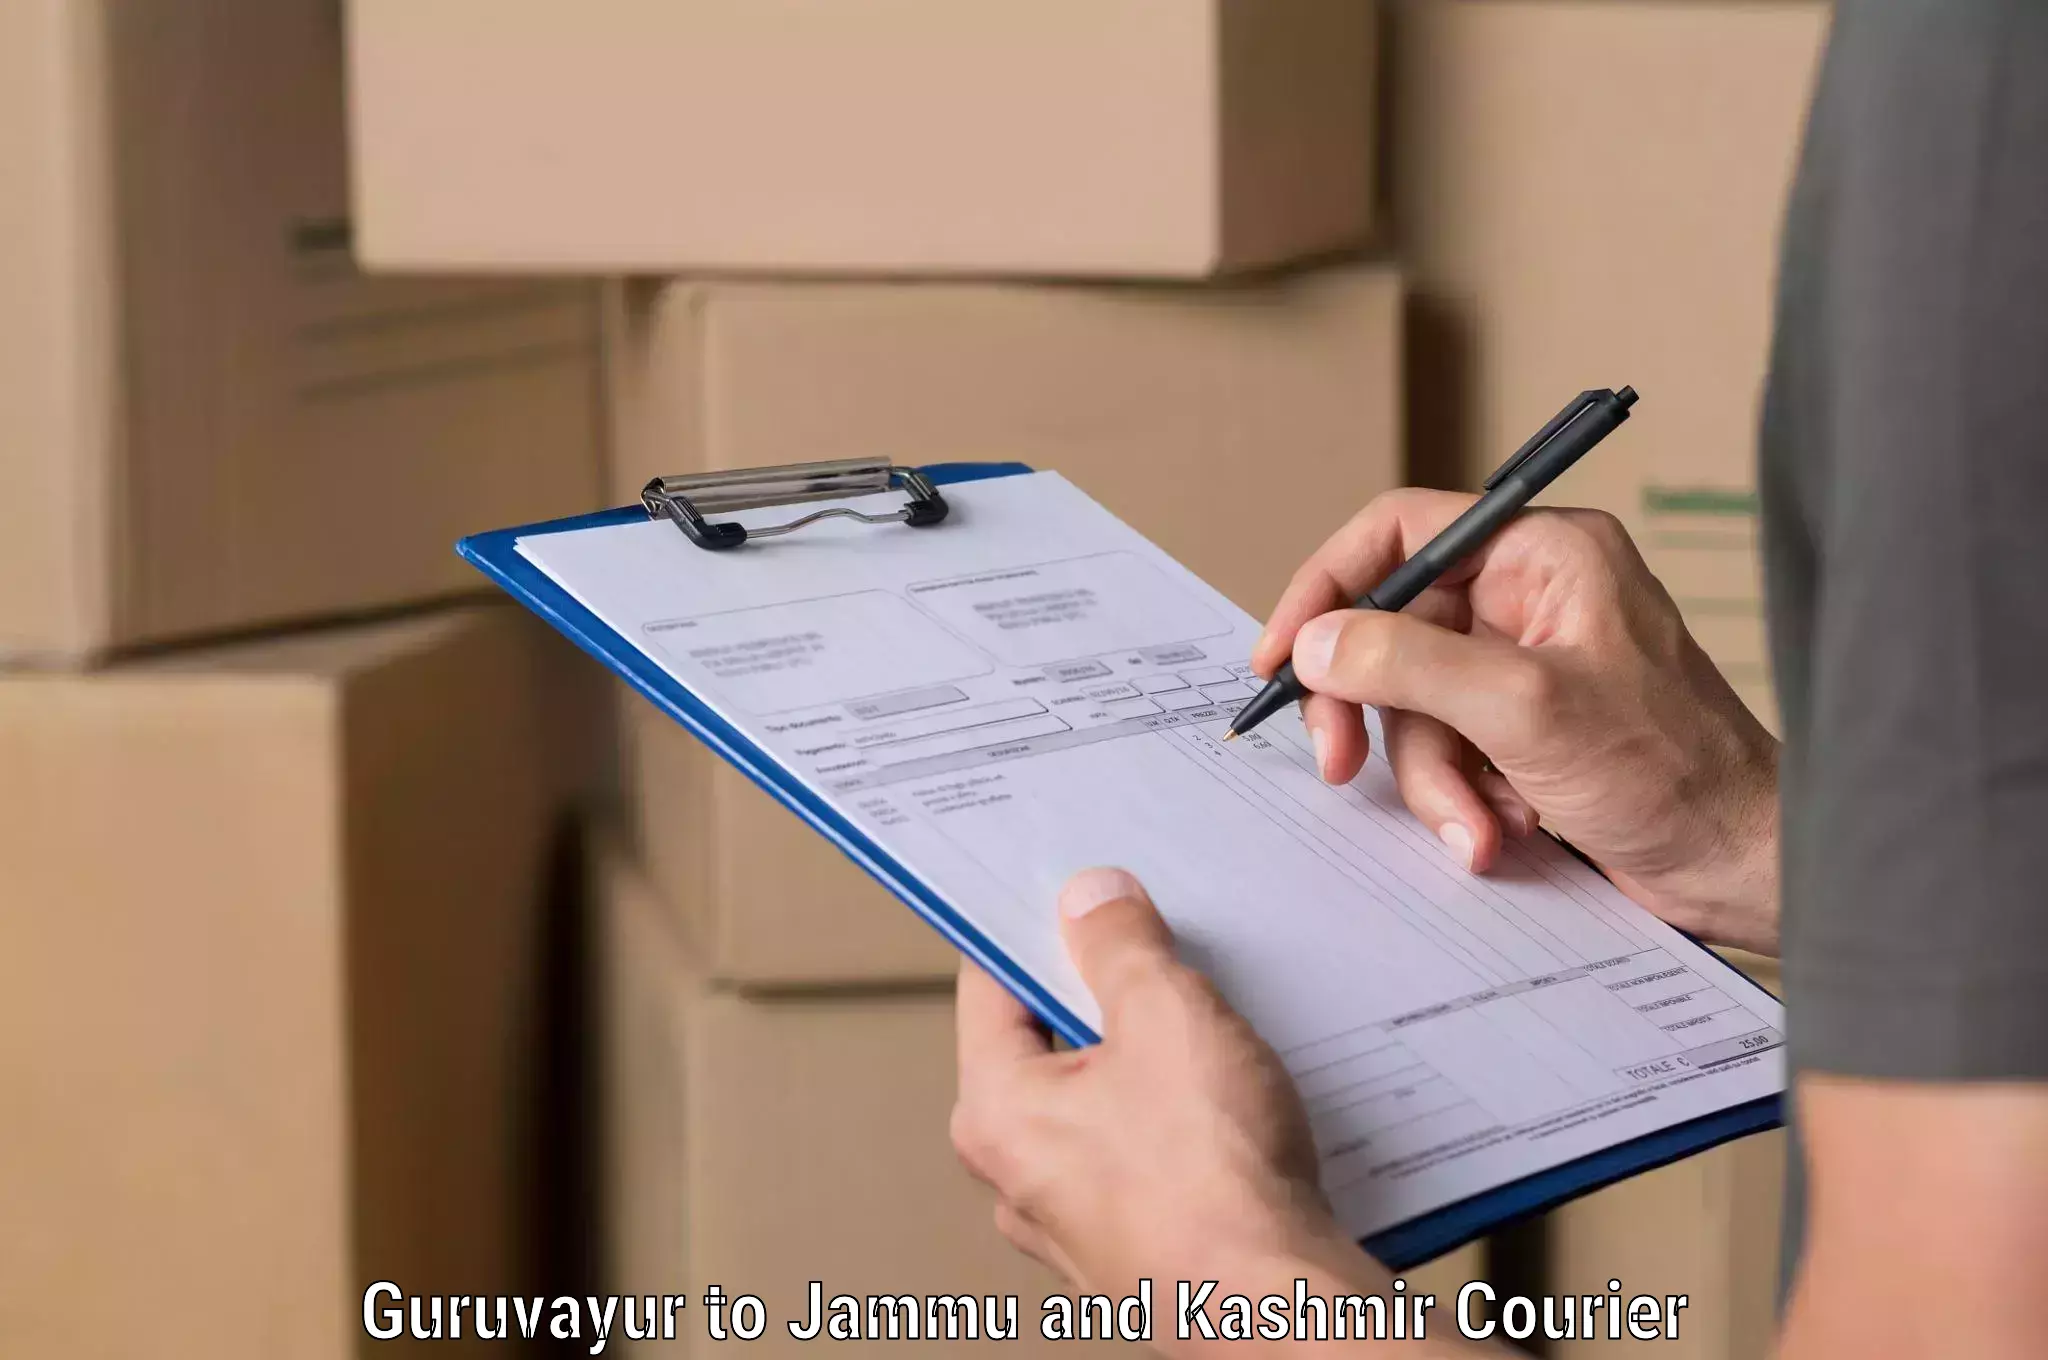 Professional courier handling Guruvayur to Bhaderwah